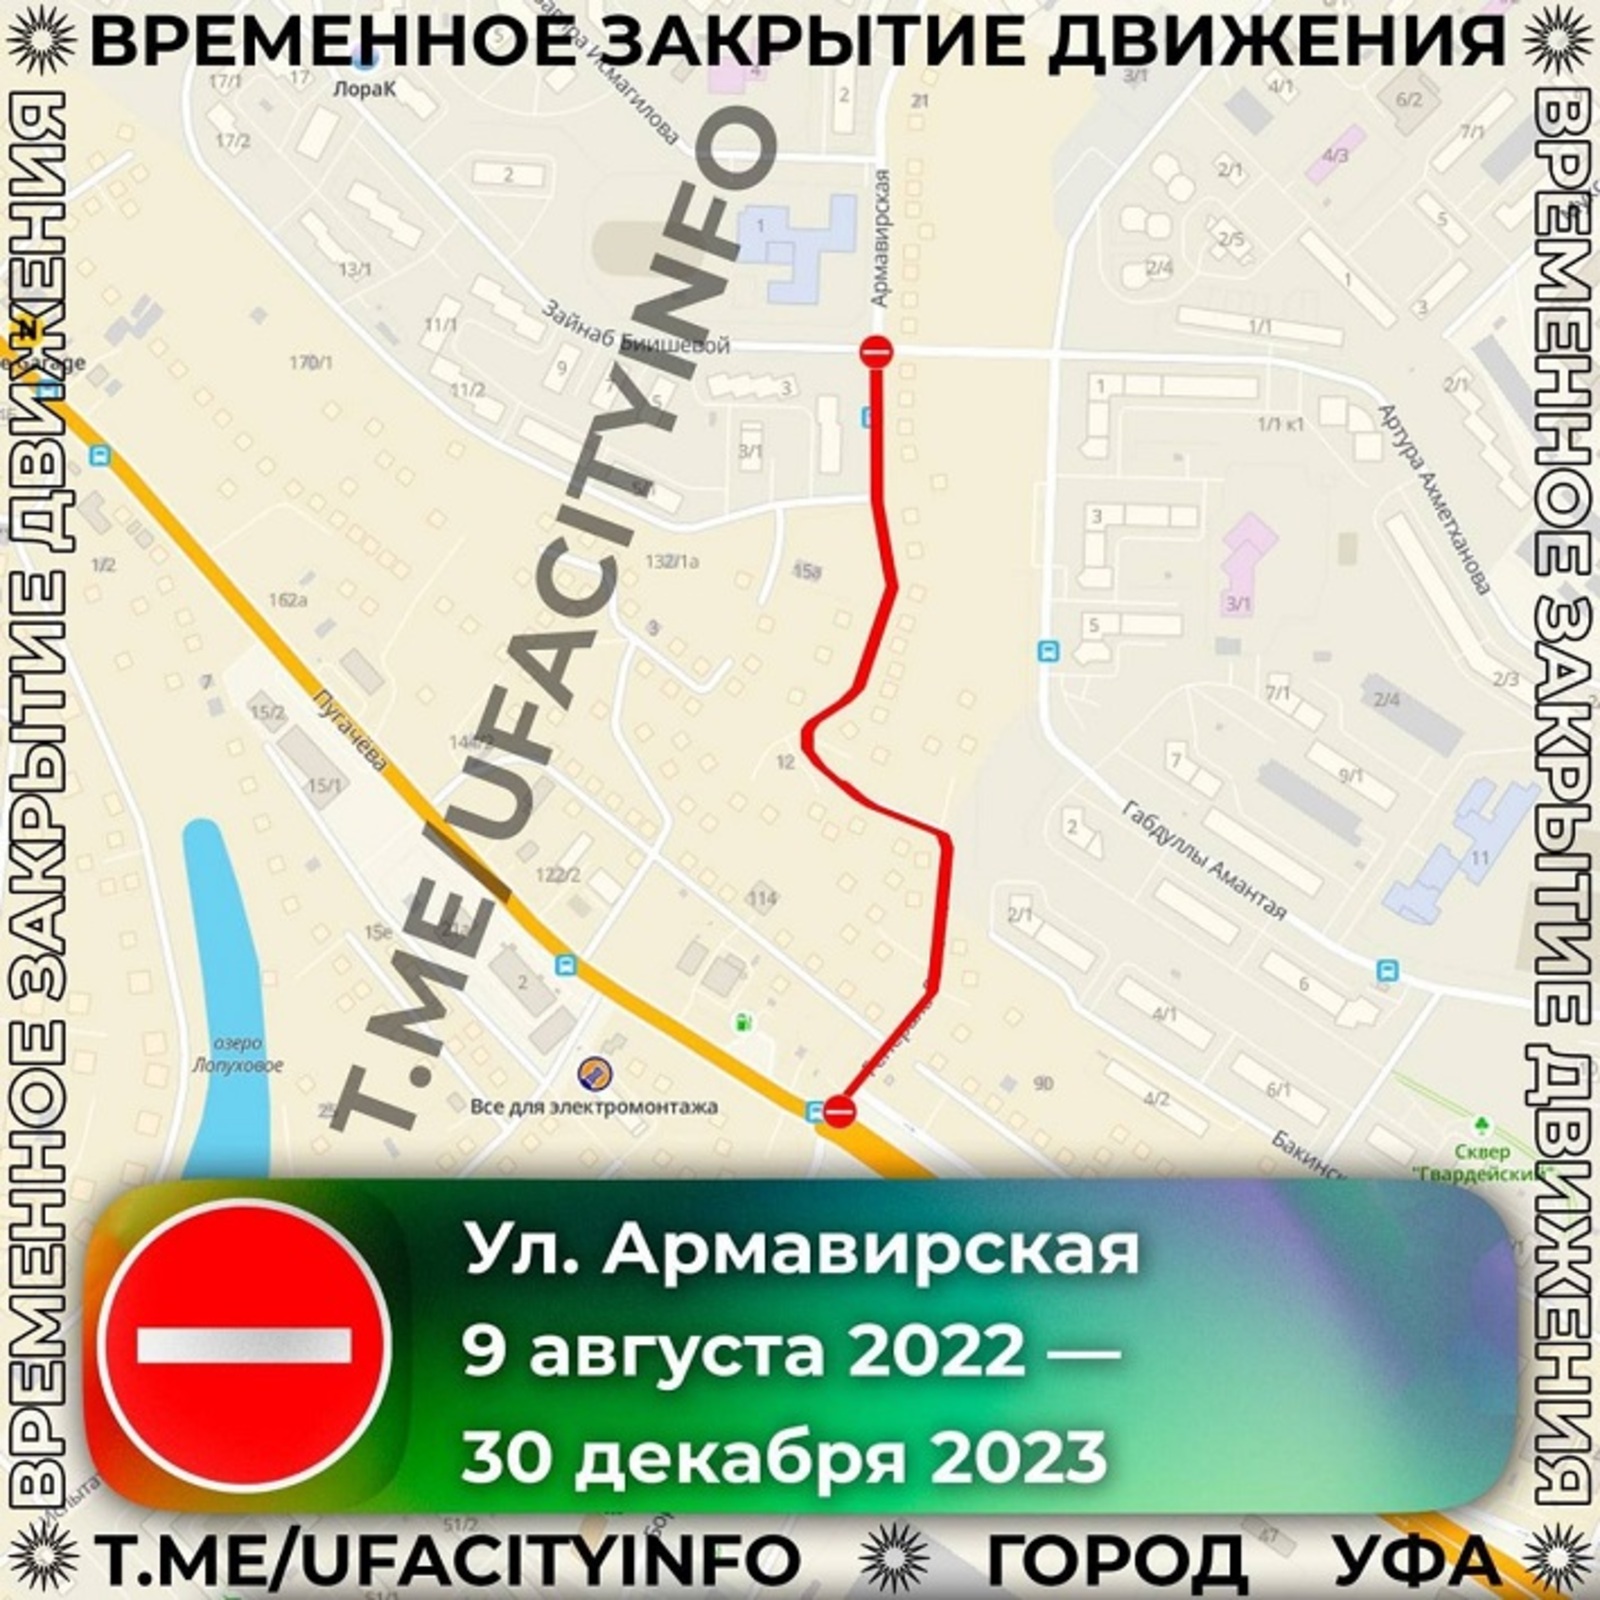 В Уфе надолго закрыли улицу Армавирскую